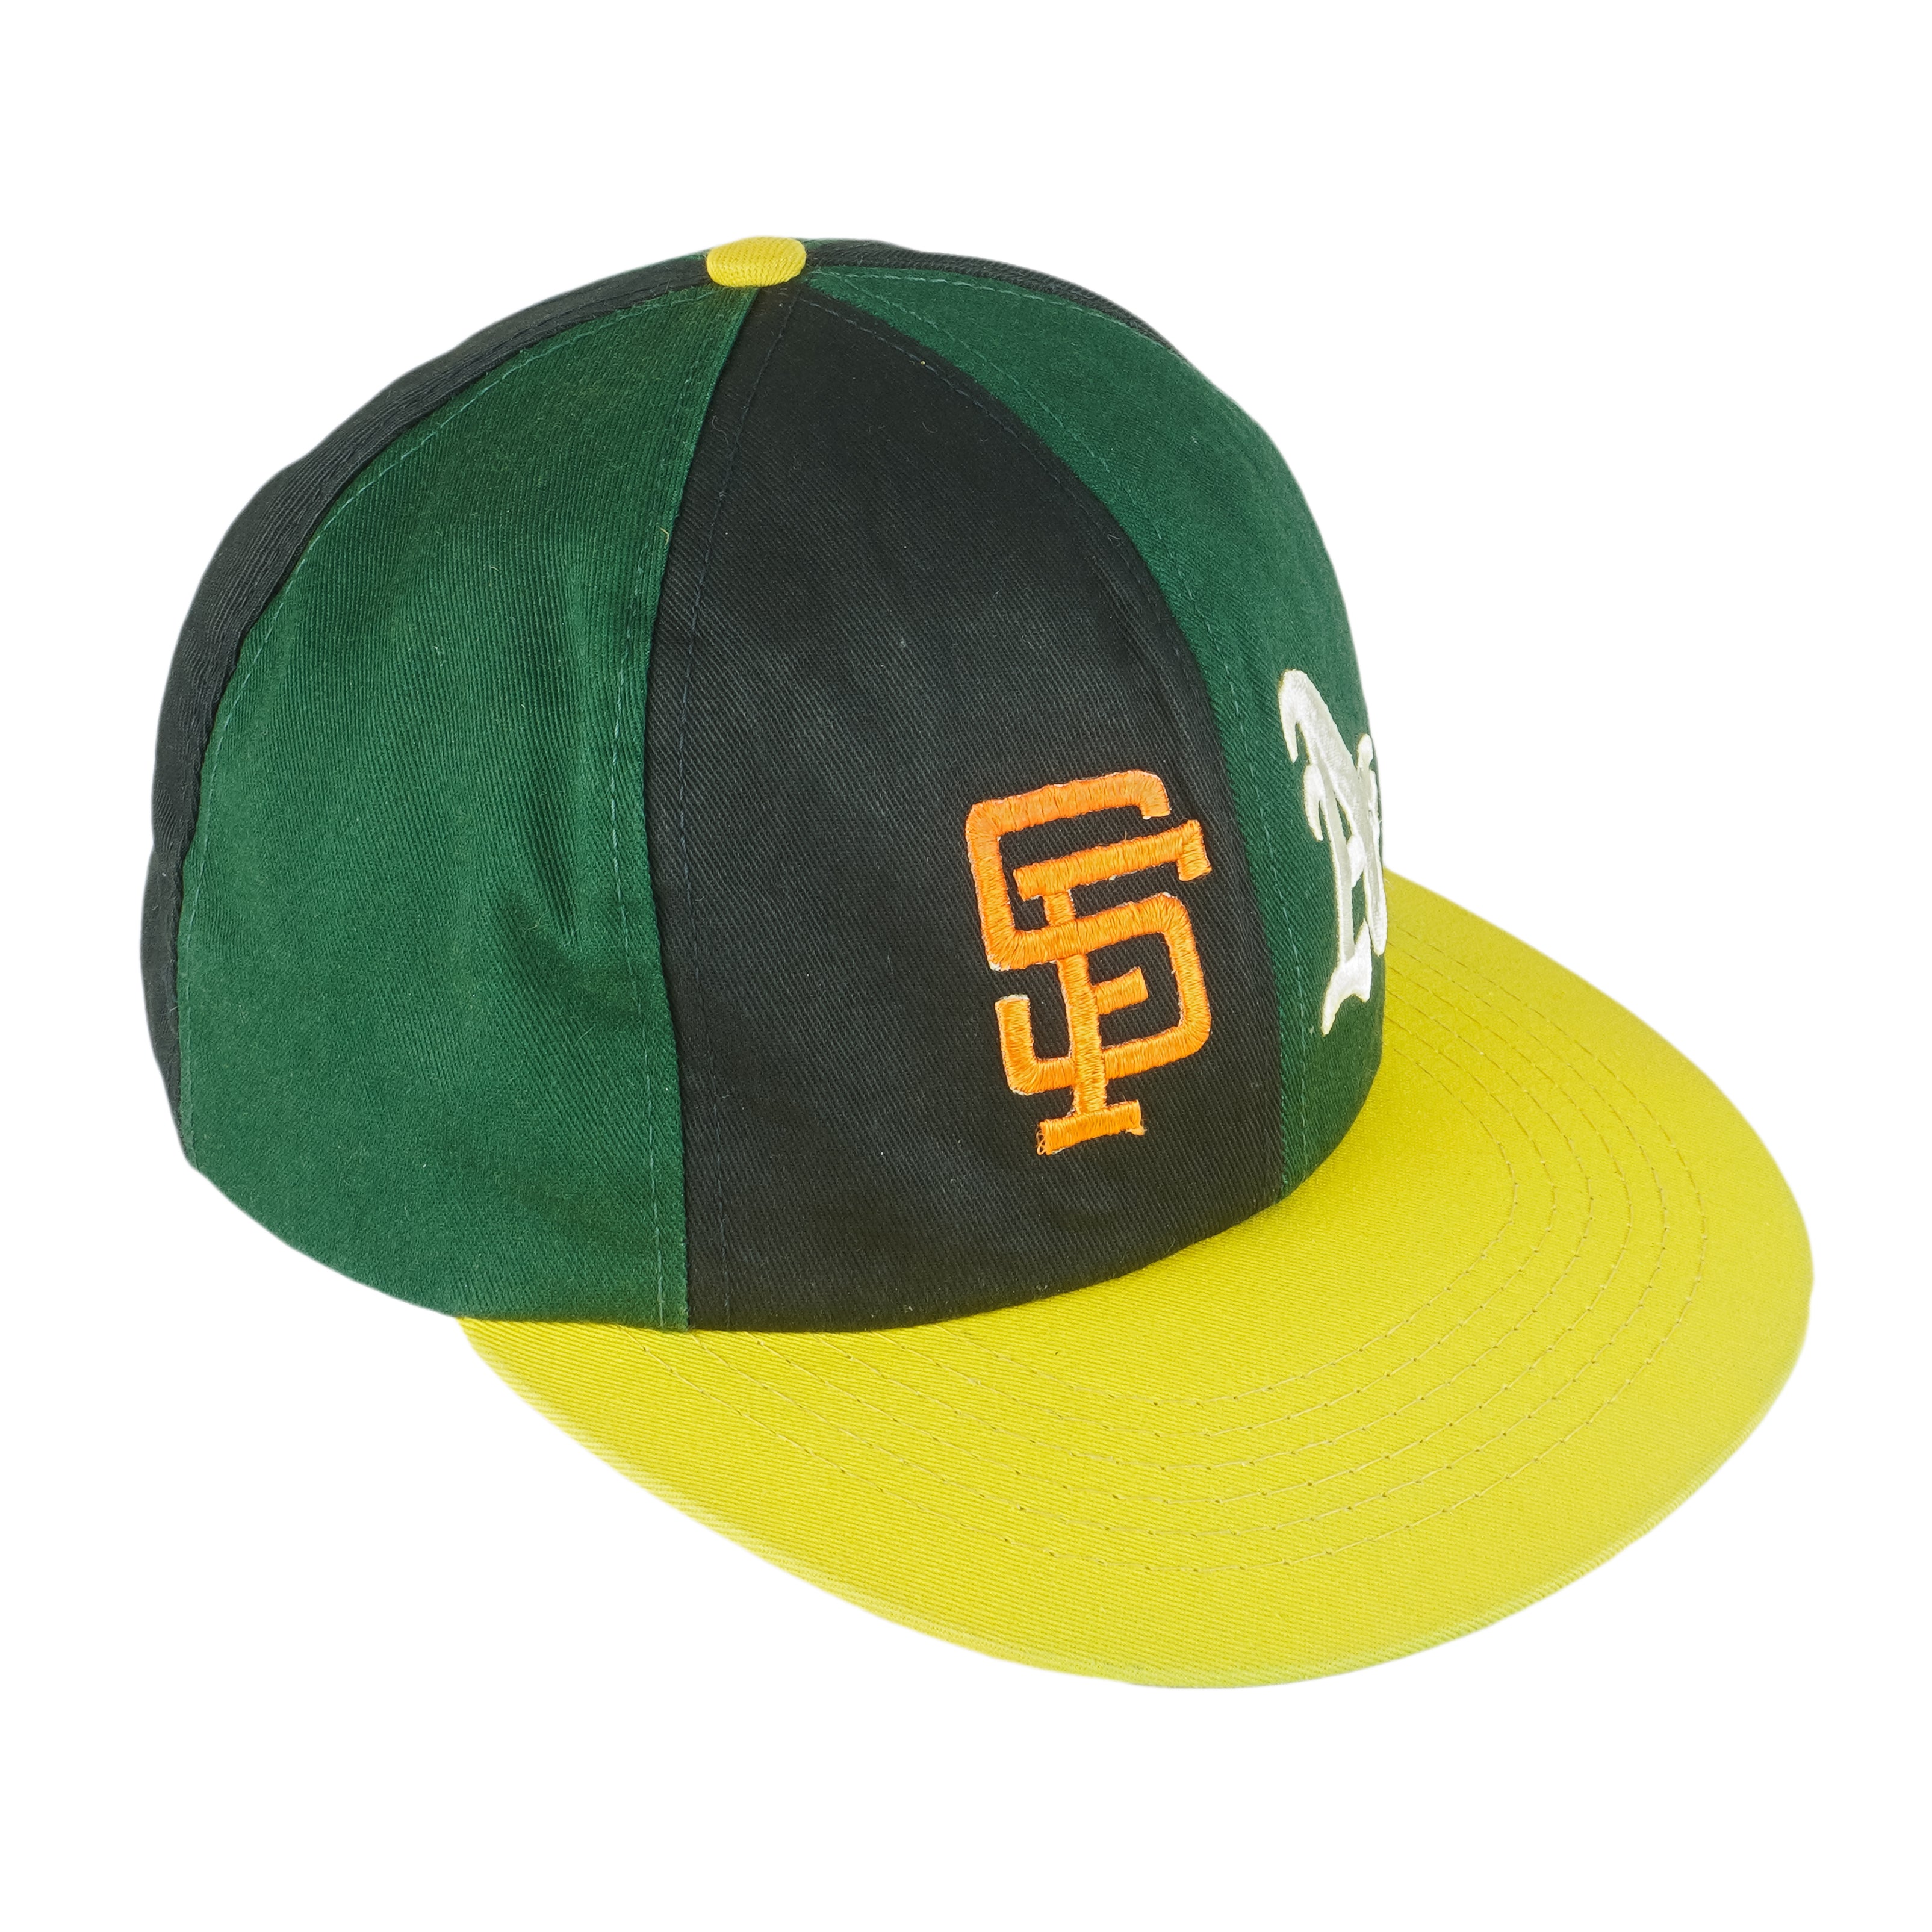 Vintage Oakland A's hat  Clothes design, Hats vintage, Fashion